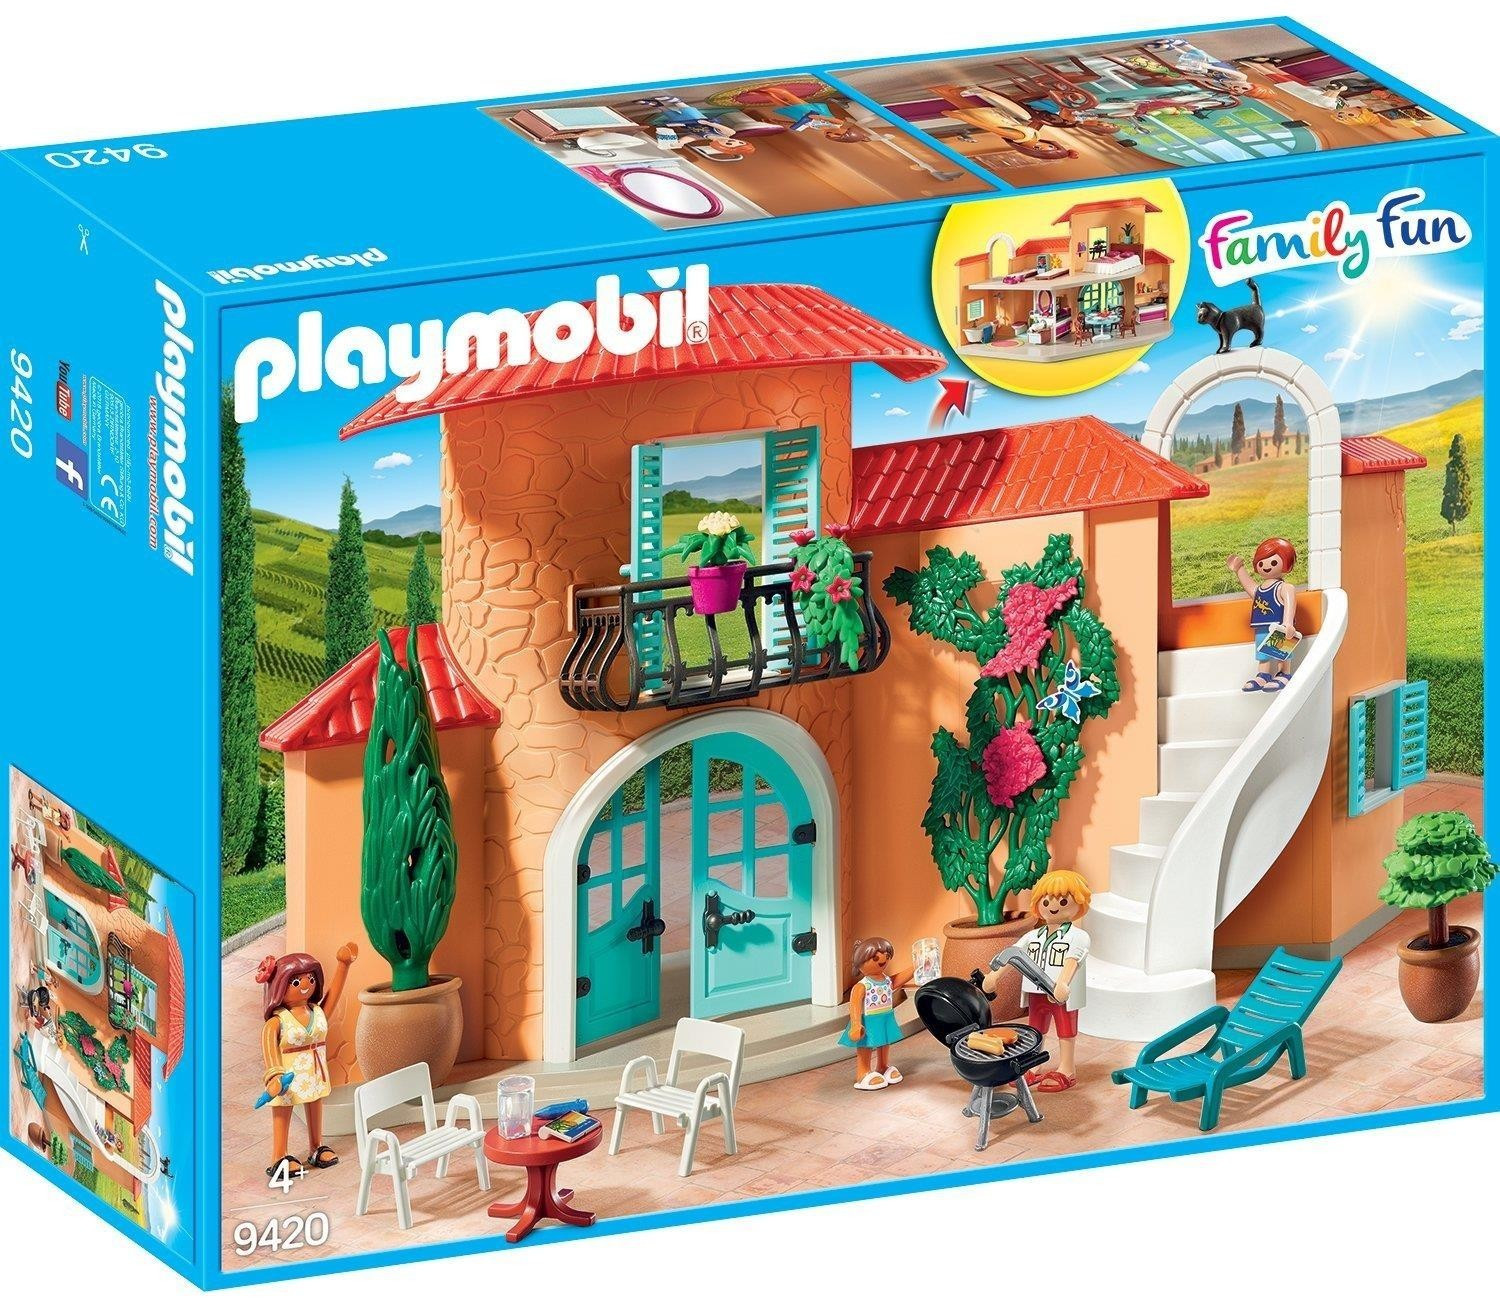 Maison Playmobil - Promos Soldes Hiver 2024